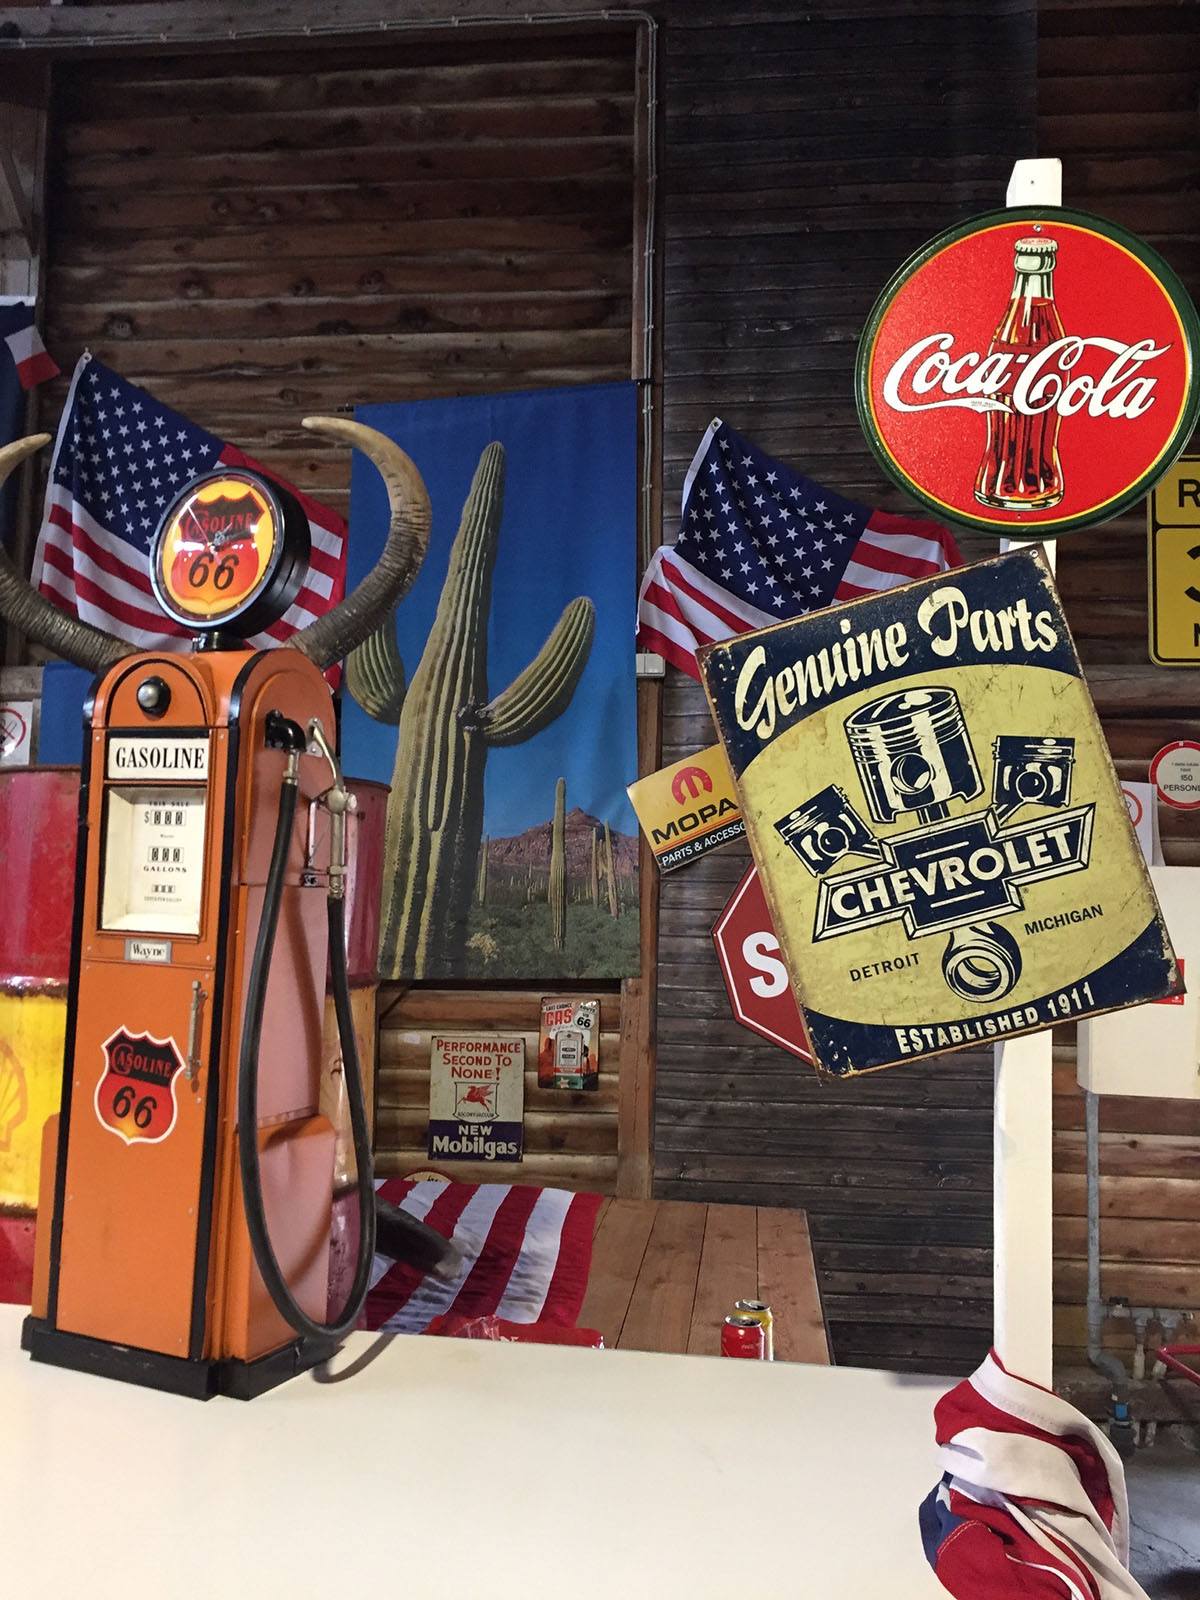 Der er pyntet med vintageskilte, billeder af skilte, det amerikanske flag og en gammel benzinstation 